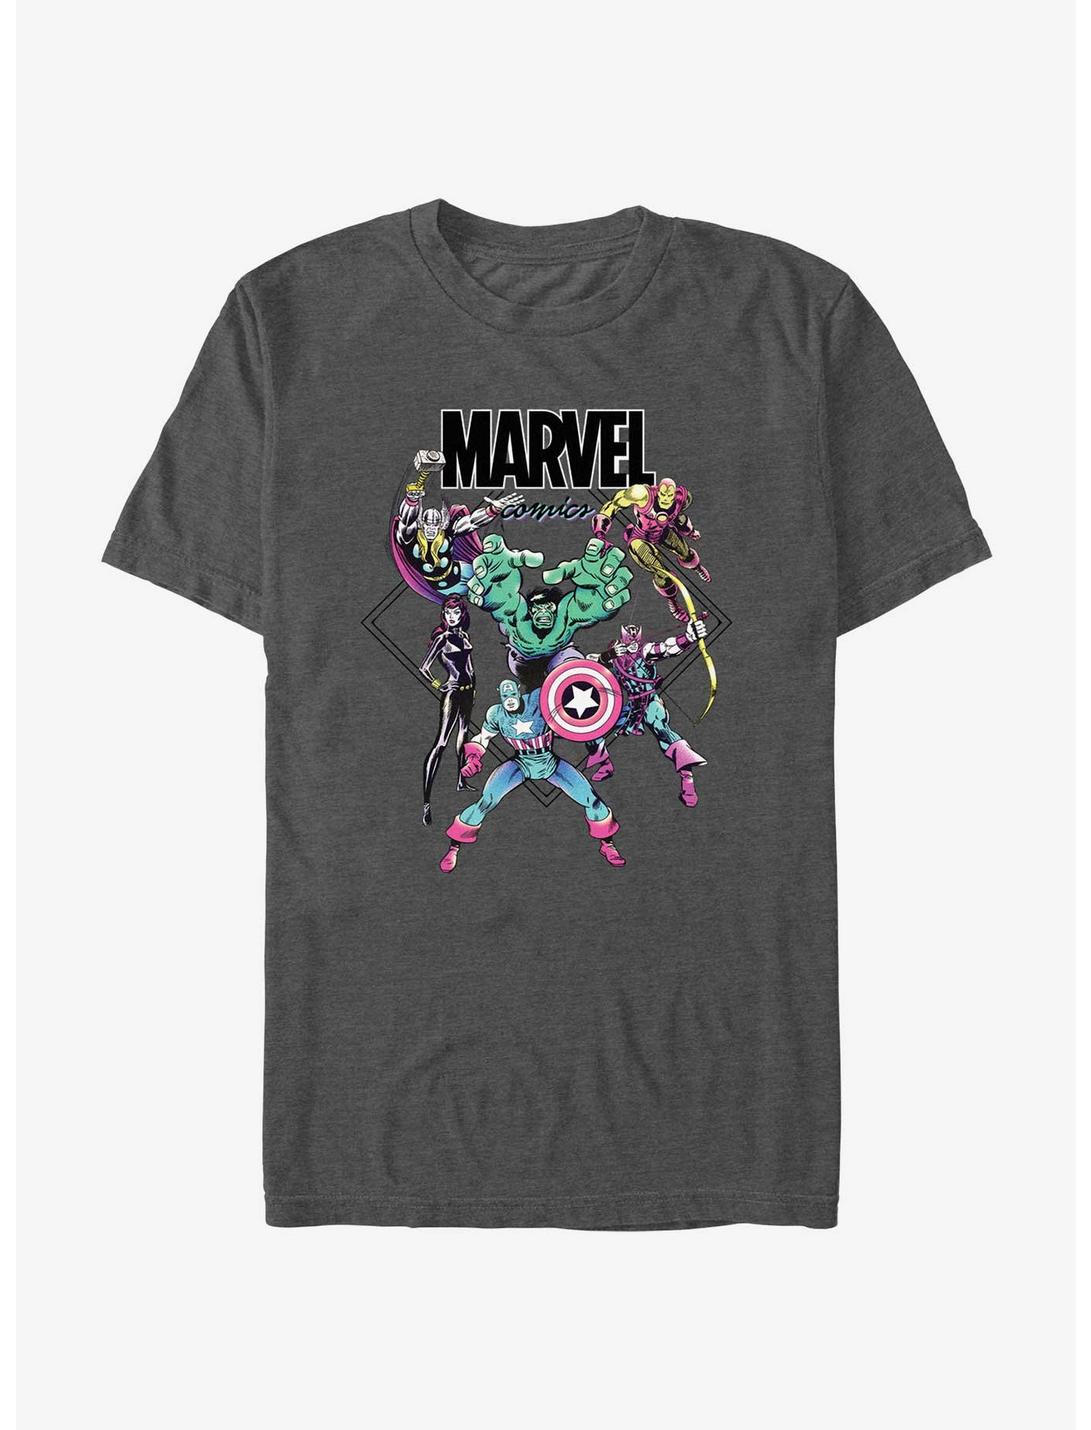 Marvel Avengers All Day T-Shirt, CHAR HTR, hi-res